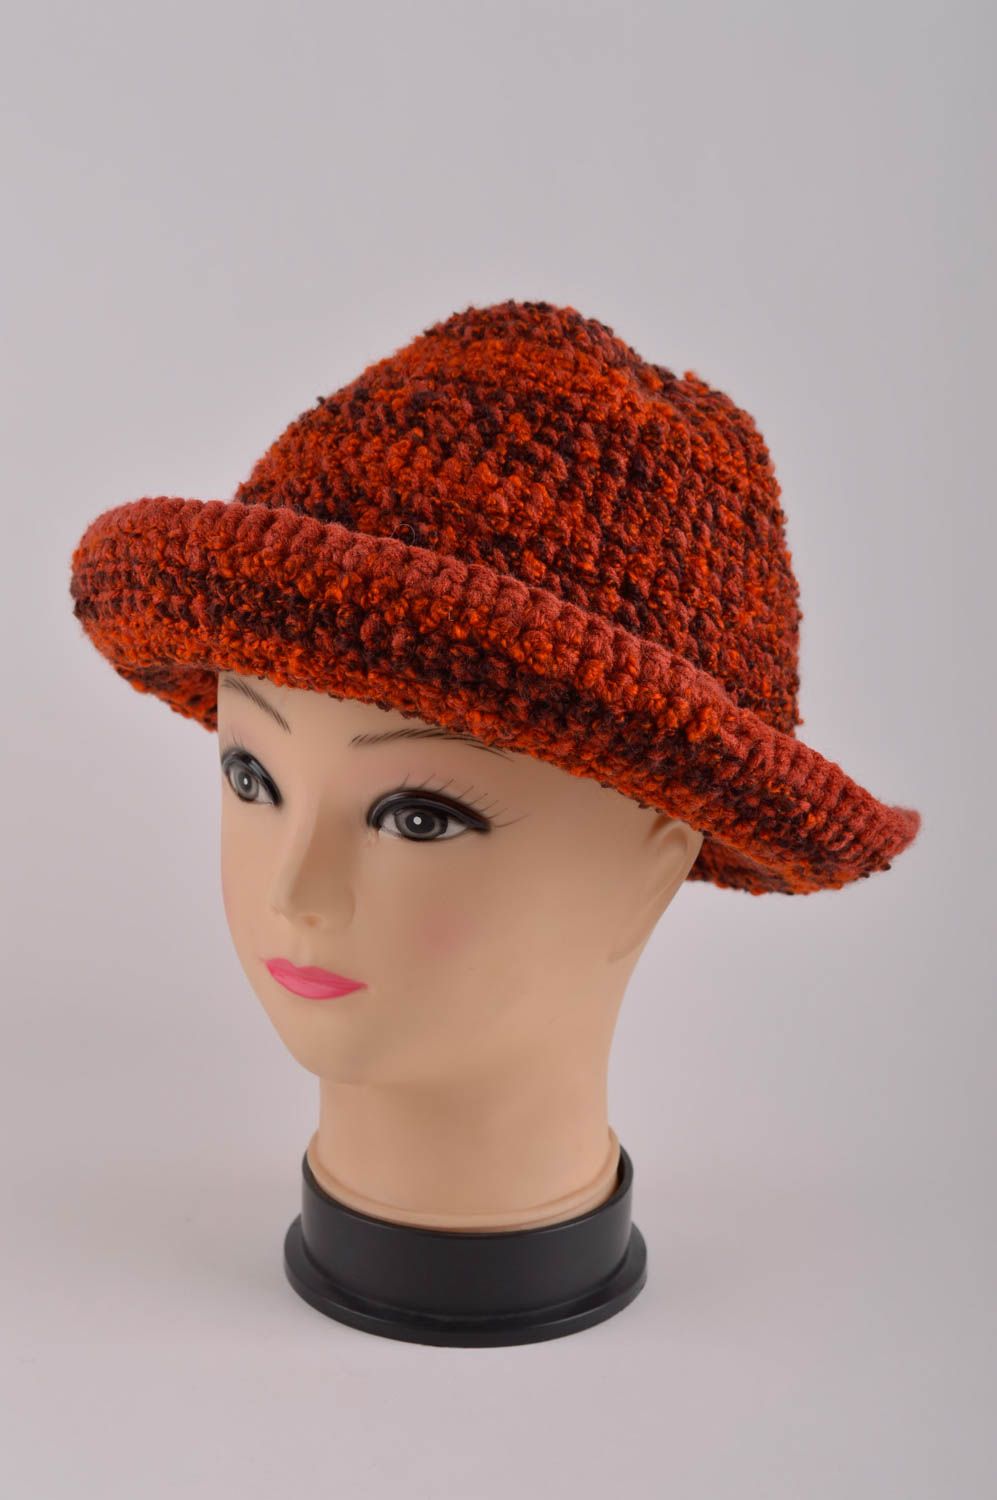 Handmade gehäkelter Hut Damen Accessoire modischer Hut aus Boucle schön foto 2